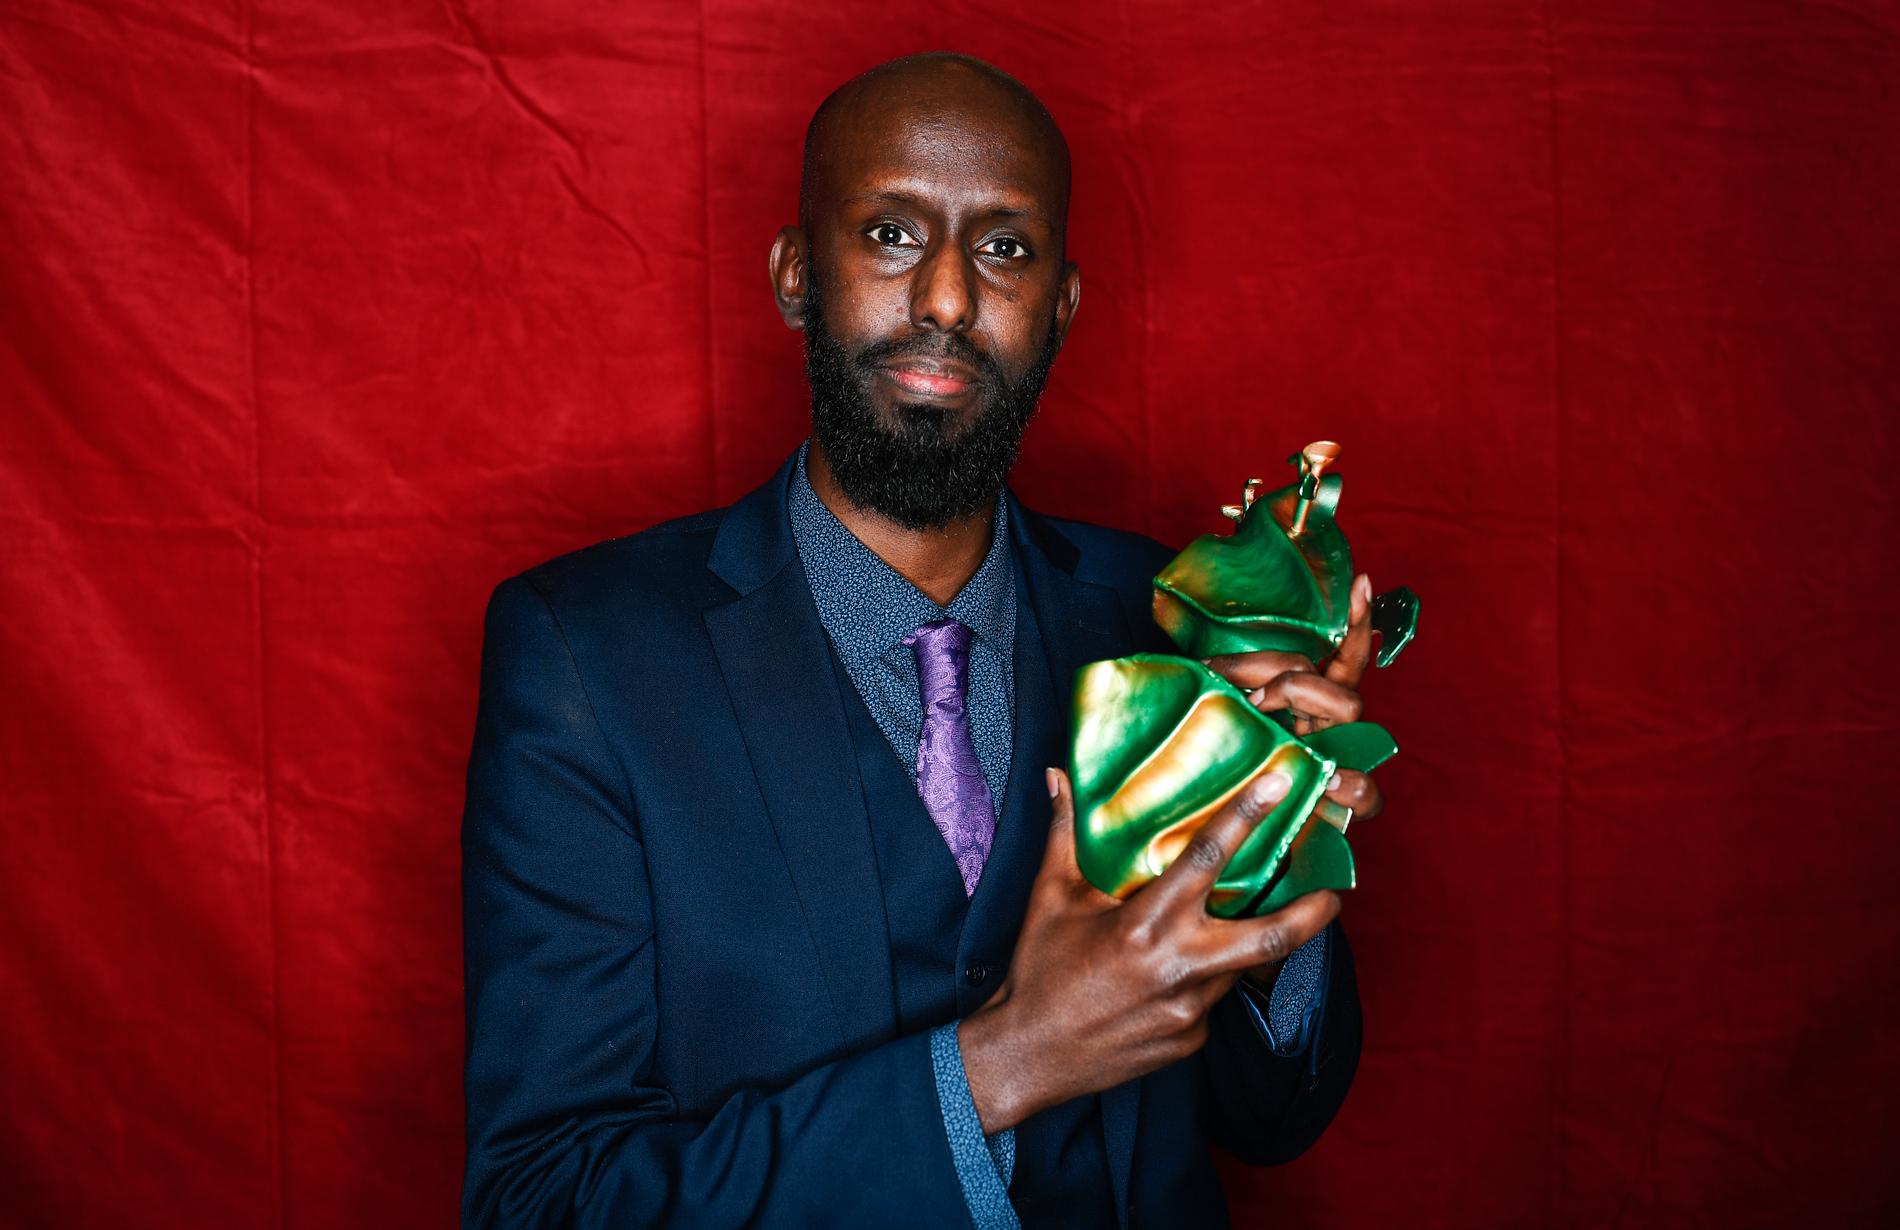 Ahmed Abdullahi vinner priset för bästa kortfilm med filmen ”Martyren”.